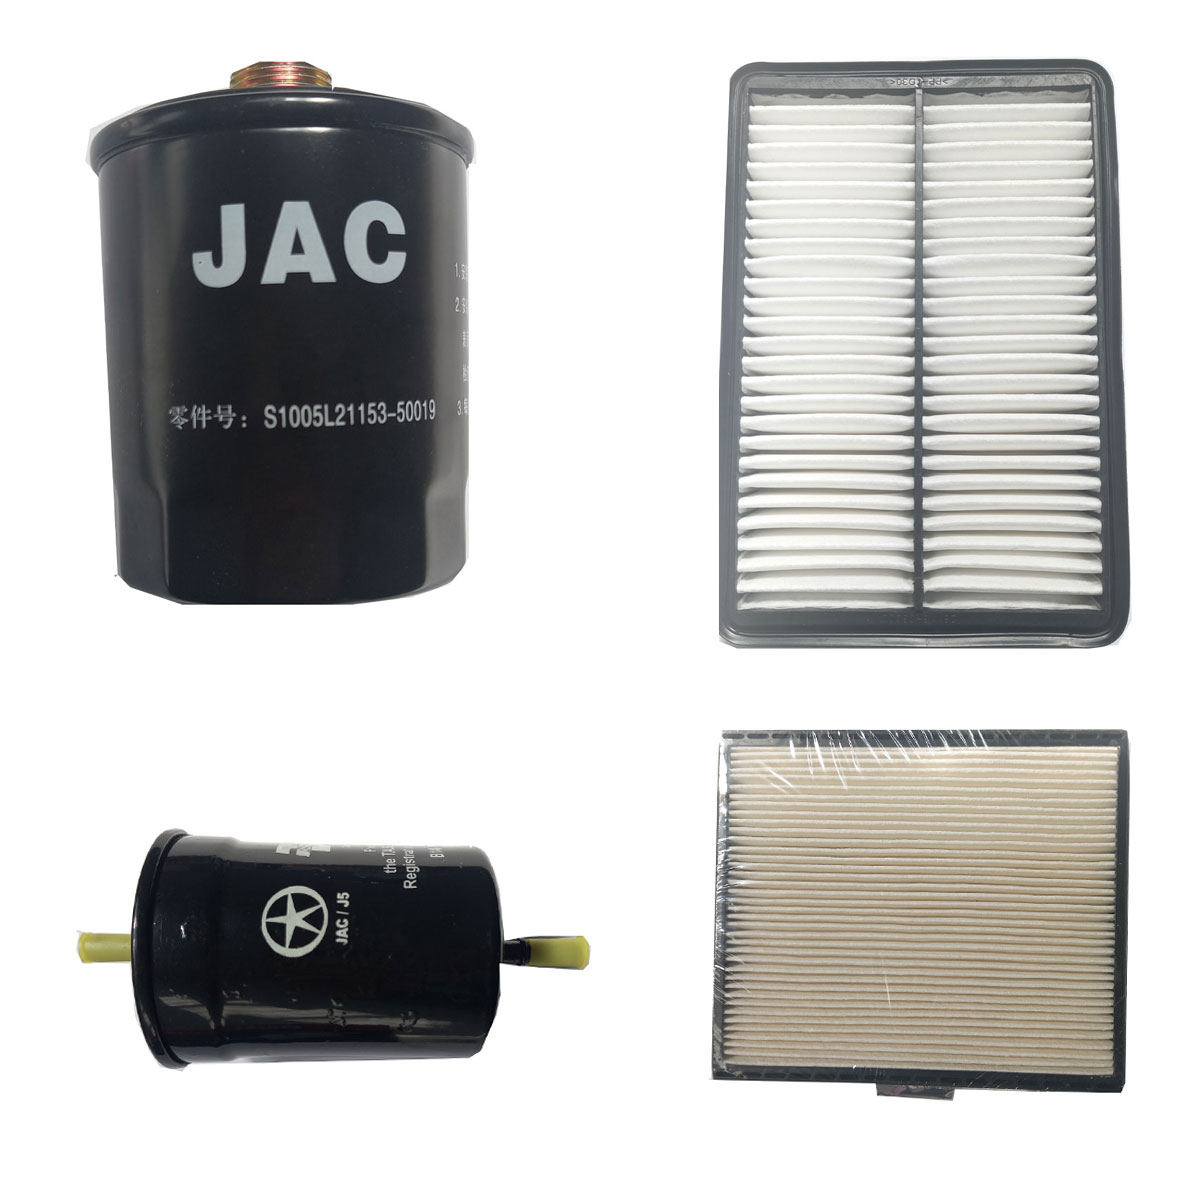 فیلتر روغن خودروی جک مدل 50019 مناسب برای خودروی جک j5 به همراه فیلتر هوا و فیلتر بنزین و کابین 